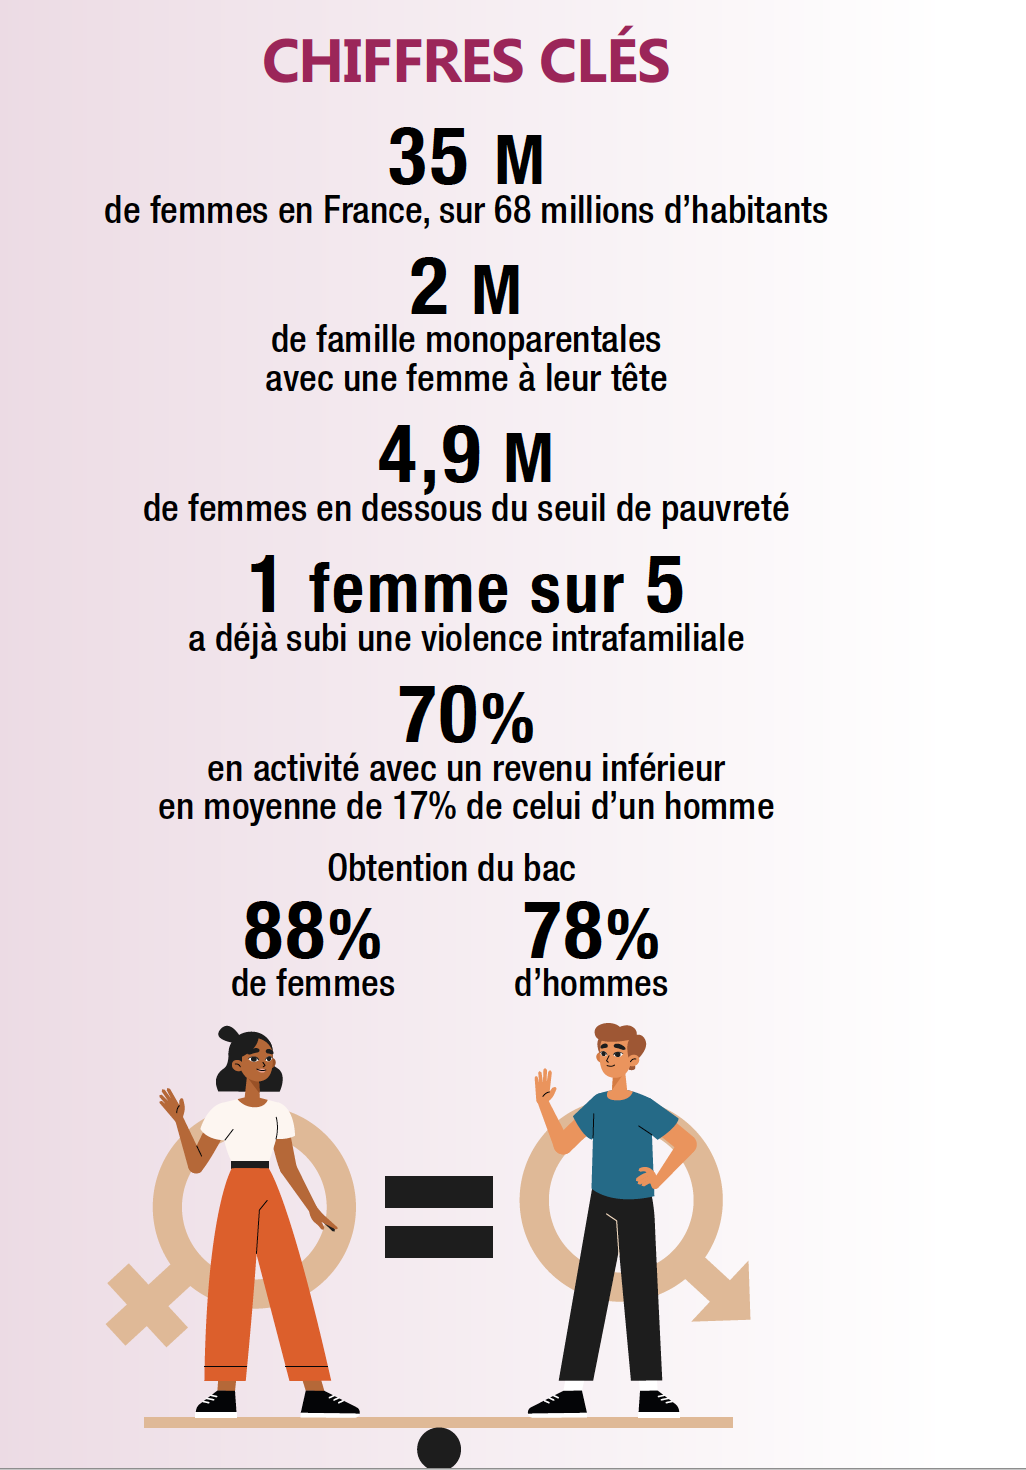 https://www.laval.fr/fileadmin/documents/CONTRE_LES_DISCRIMINATIONS/%C3%89GALIT%C3%89_HOMMES_FEMMES/CHIFFRES_CL%C3%89.png